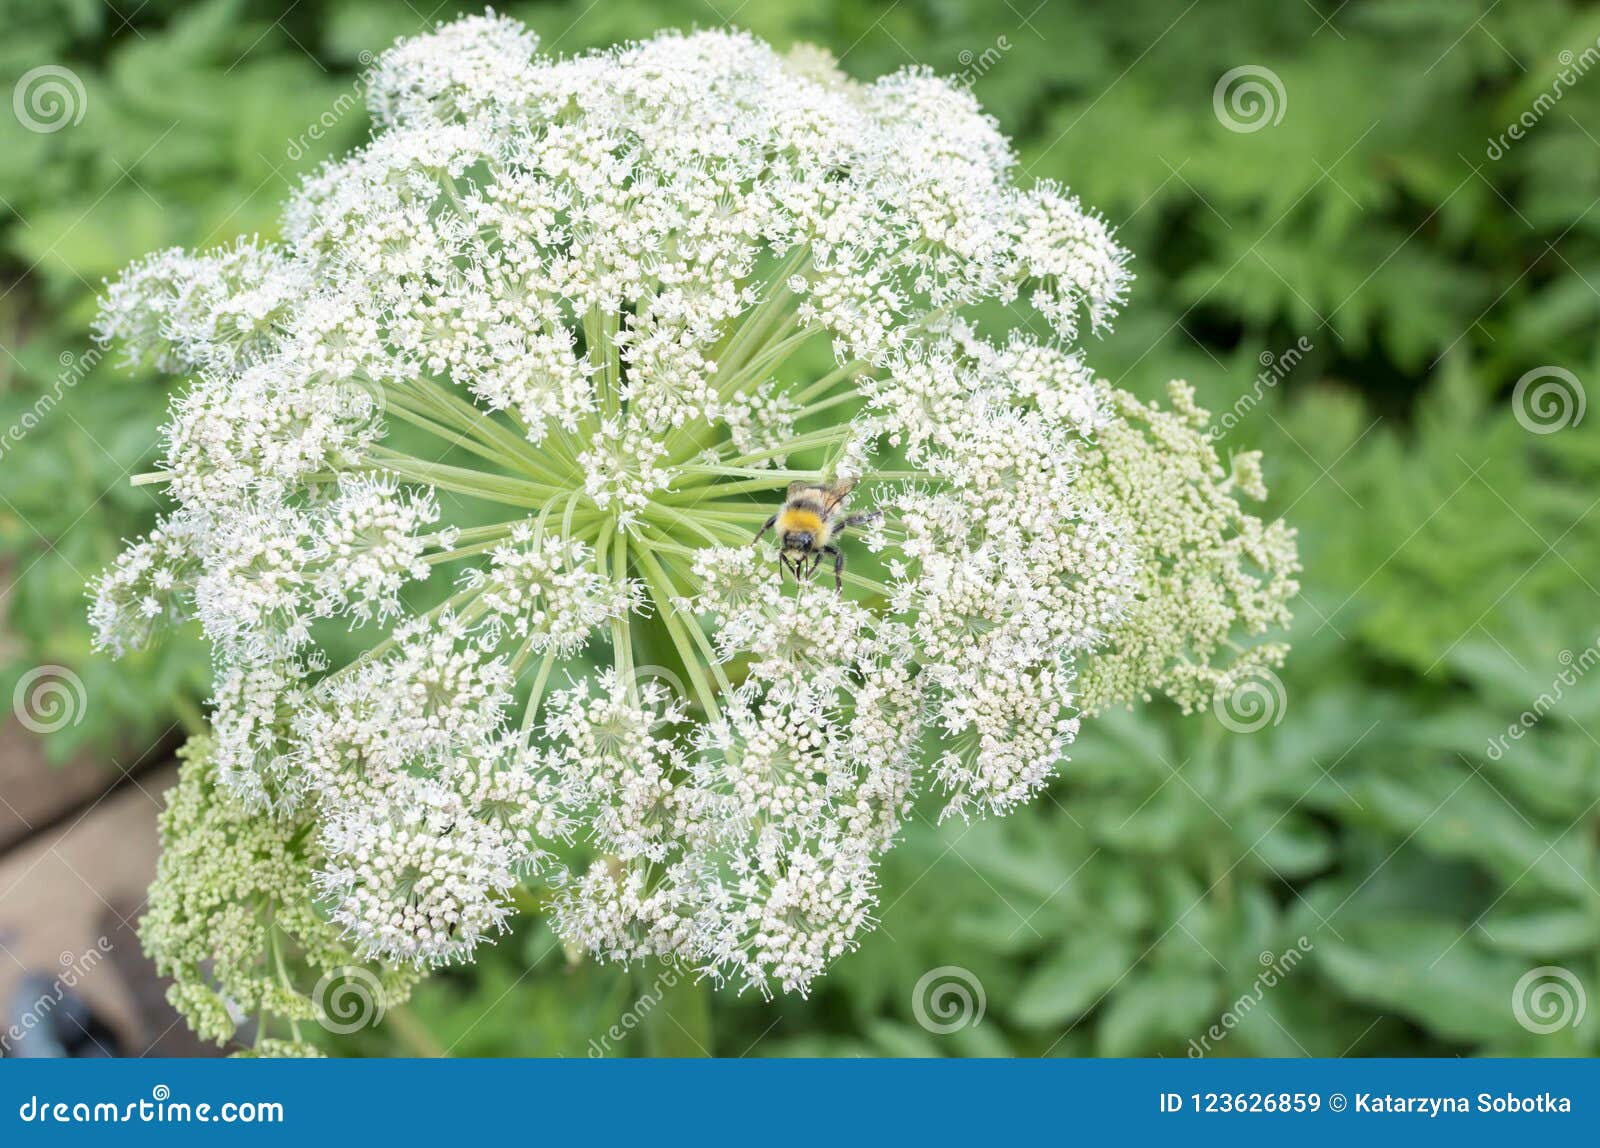 Garden Angelica flower stock image. Image of outdoor - 123626859